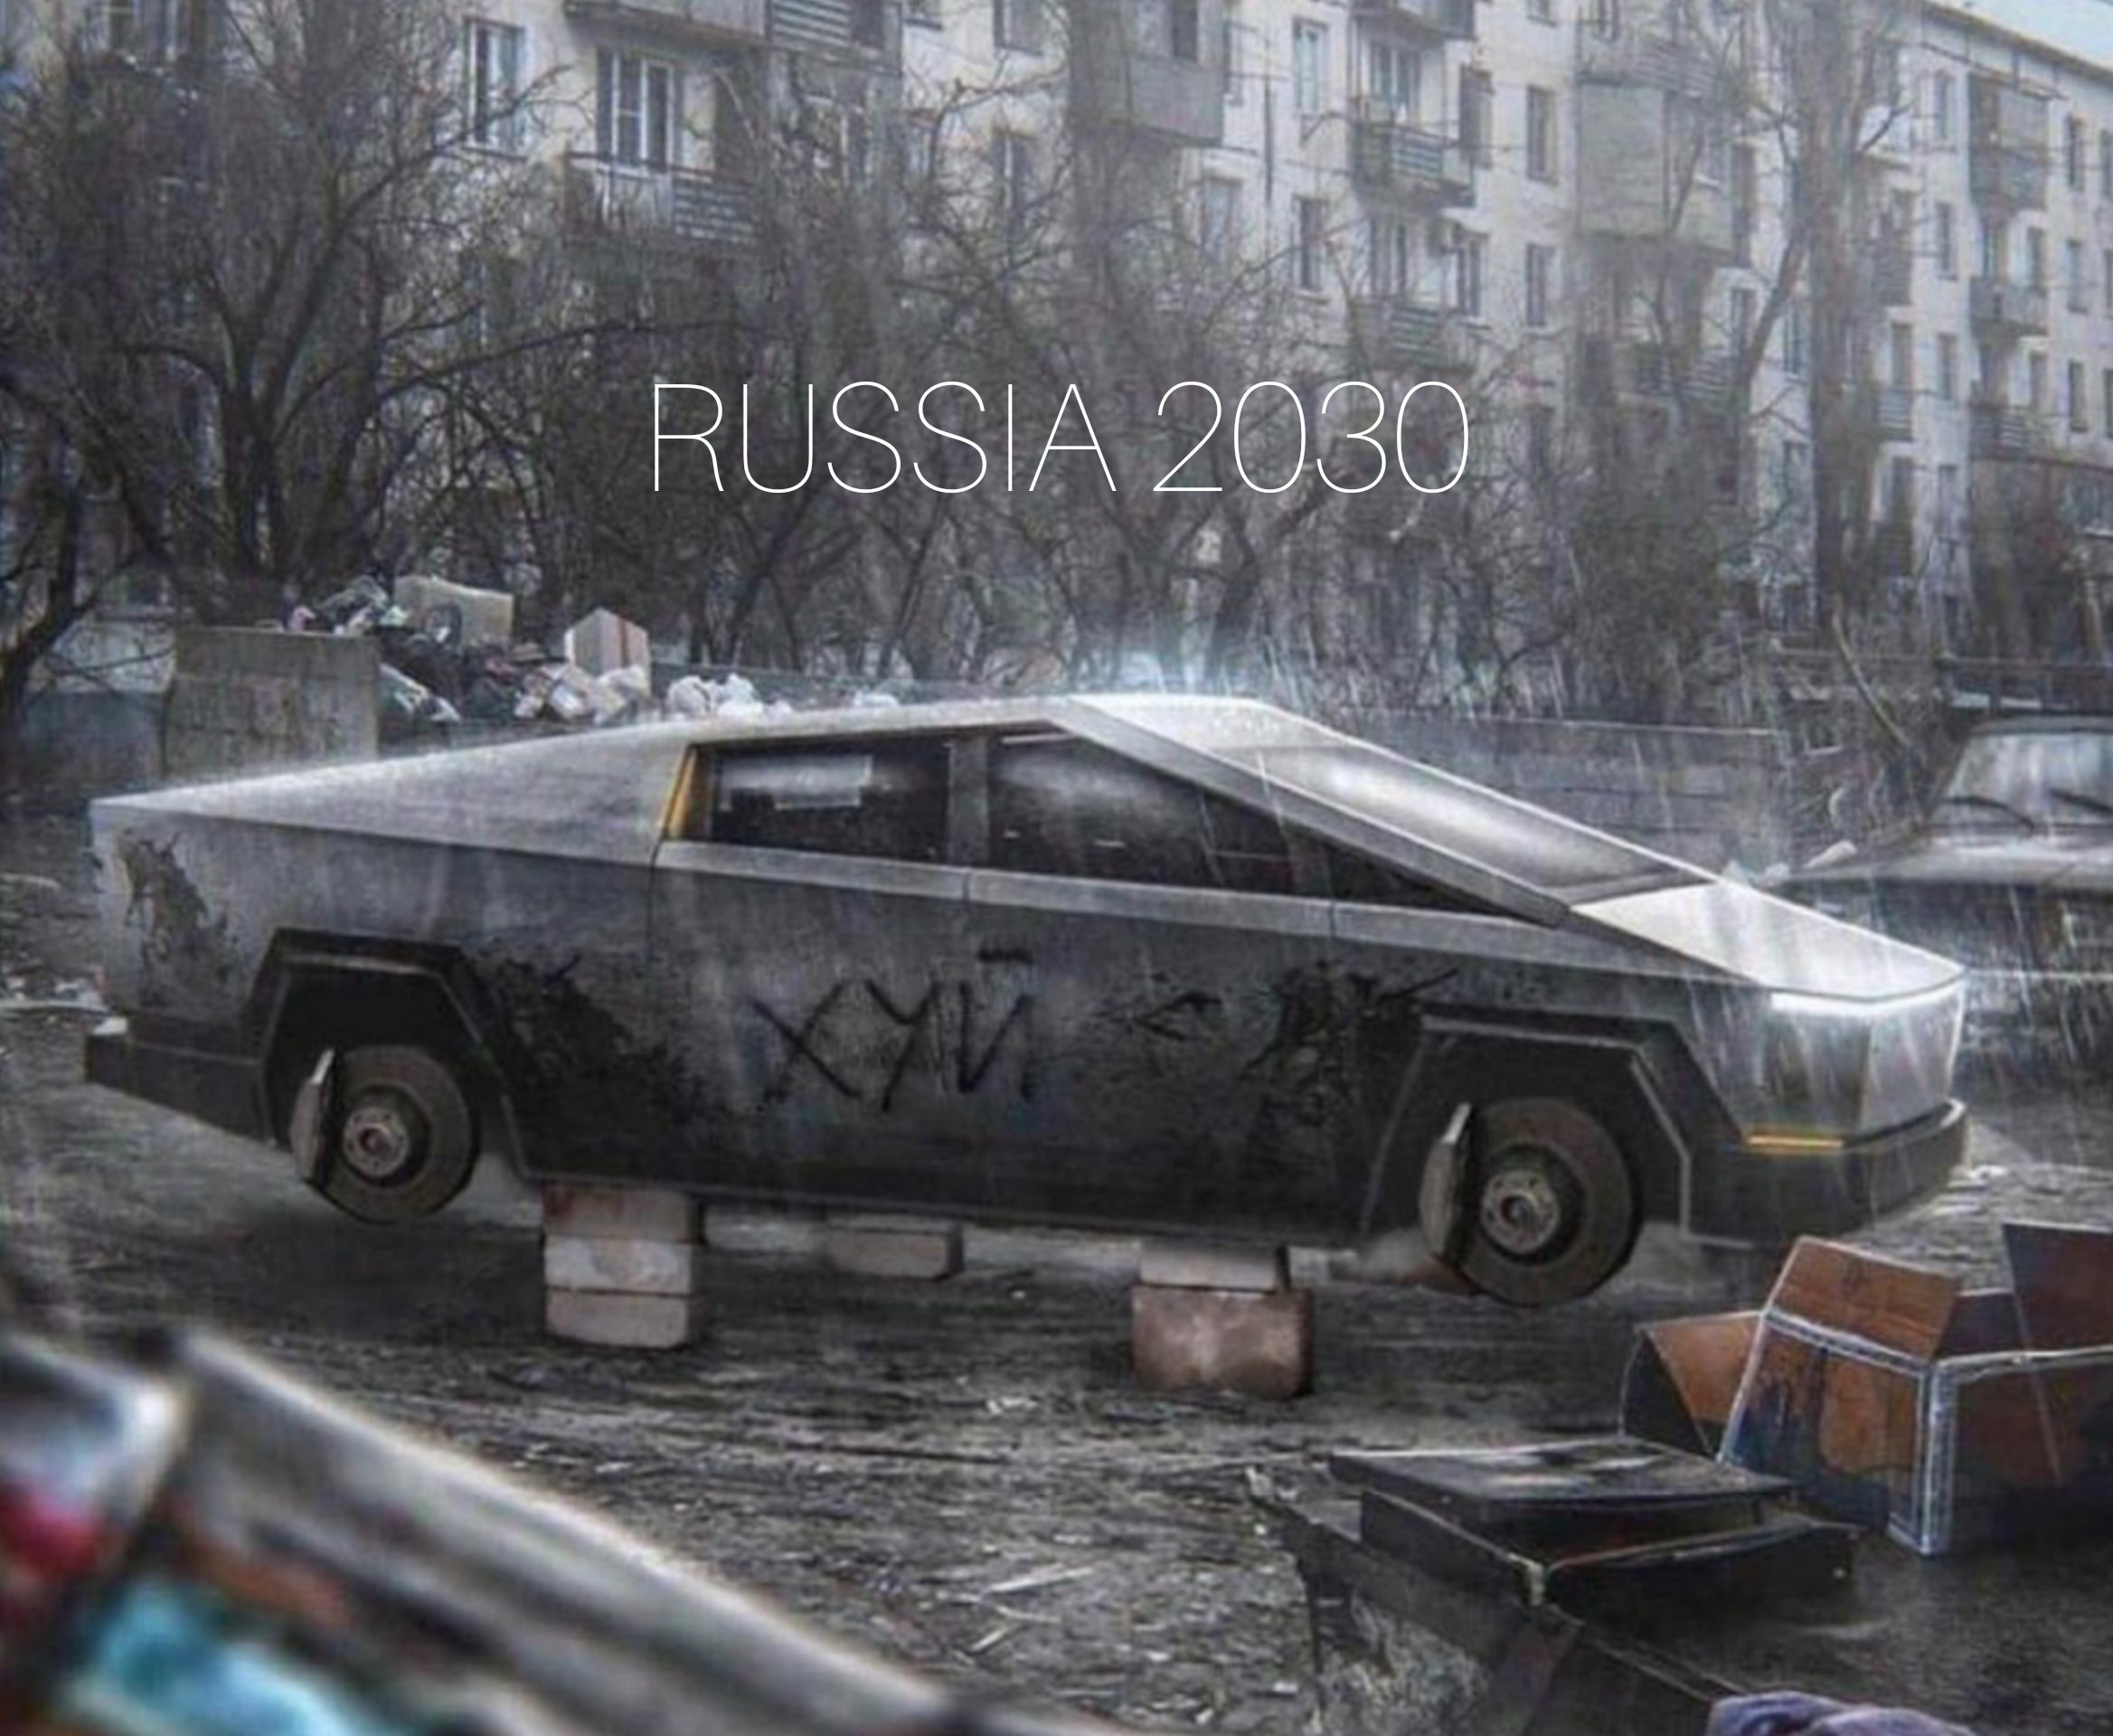 cyber truck - A Russia 2030